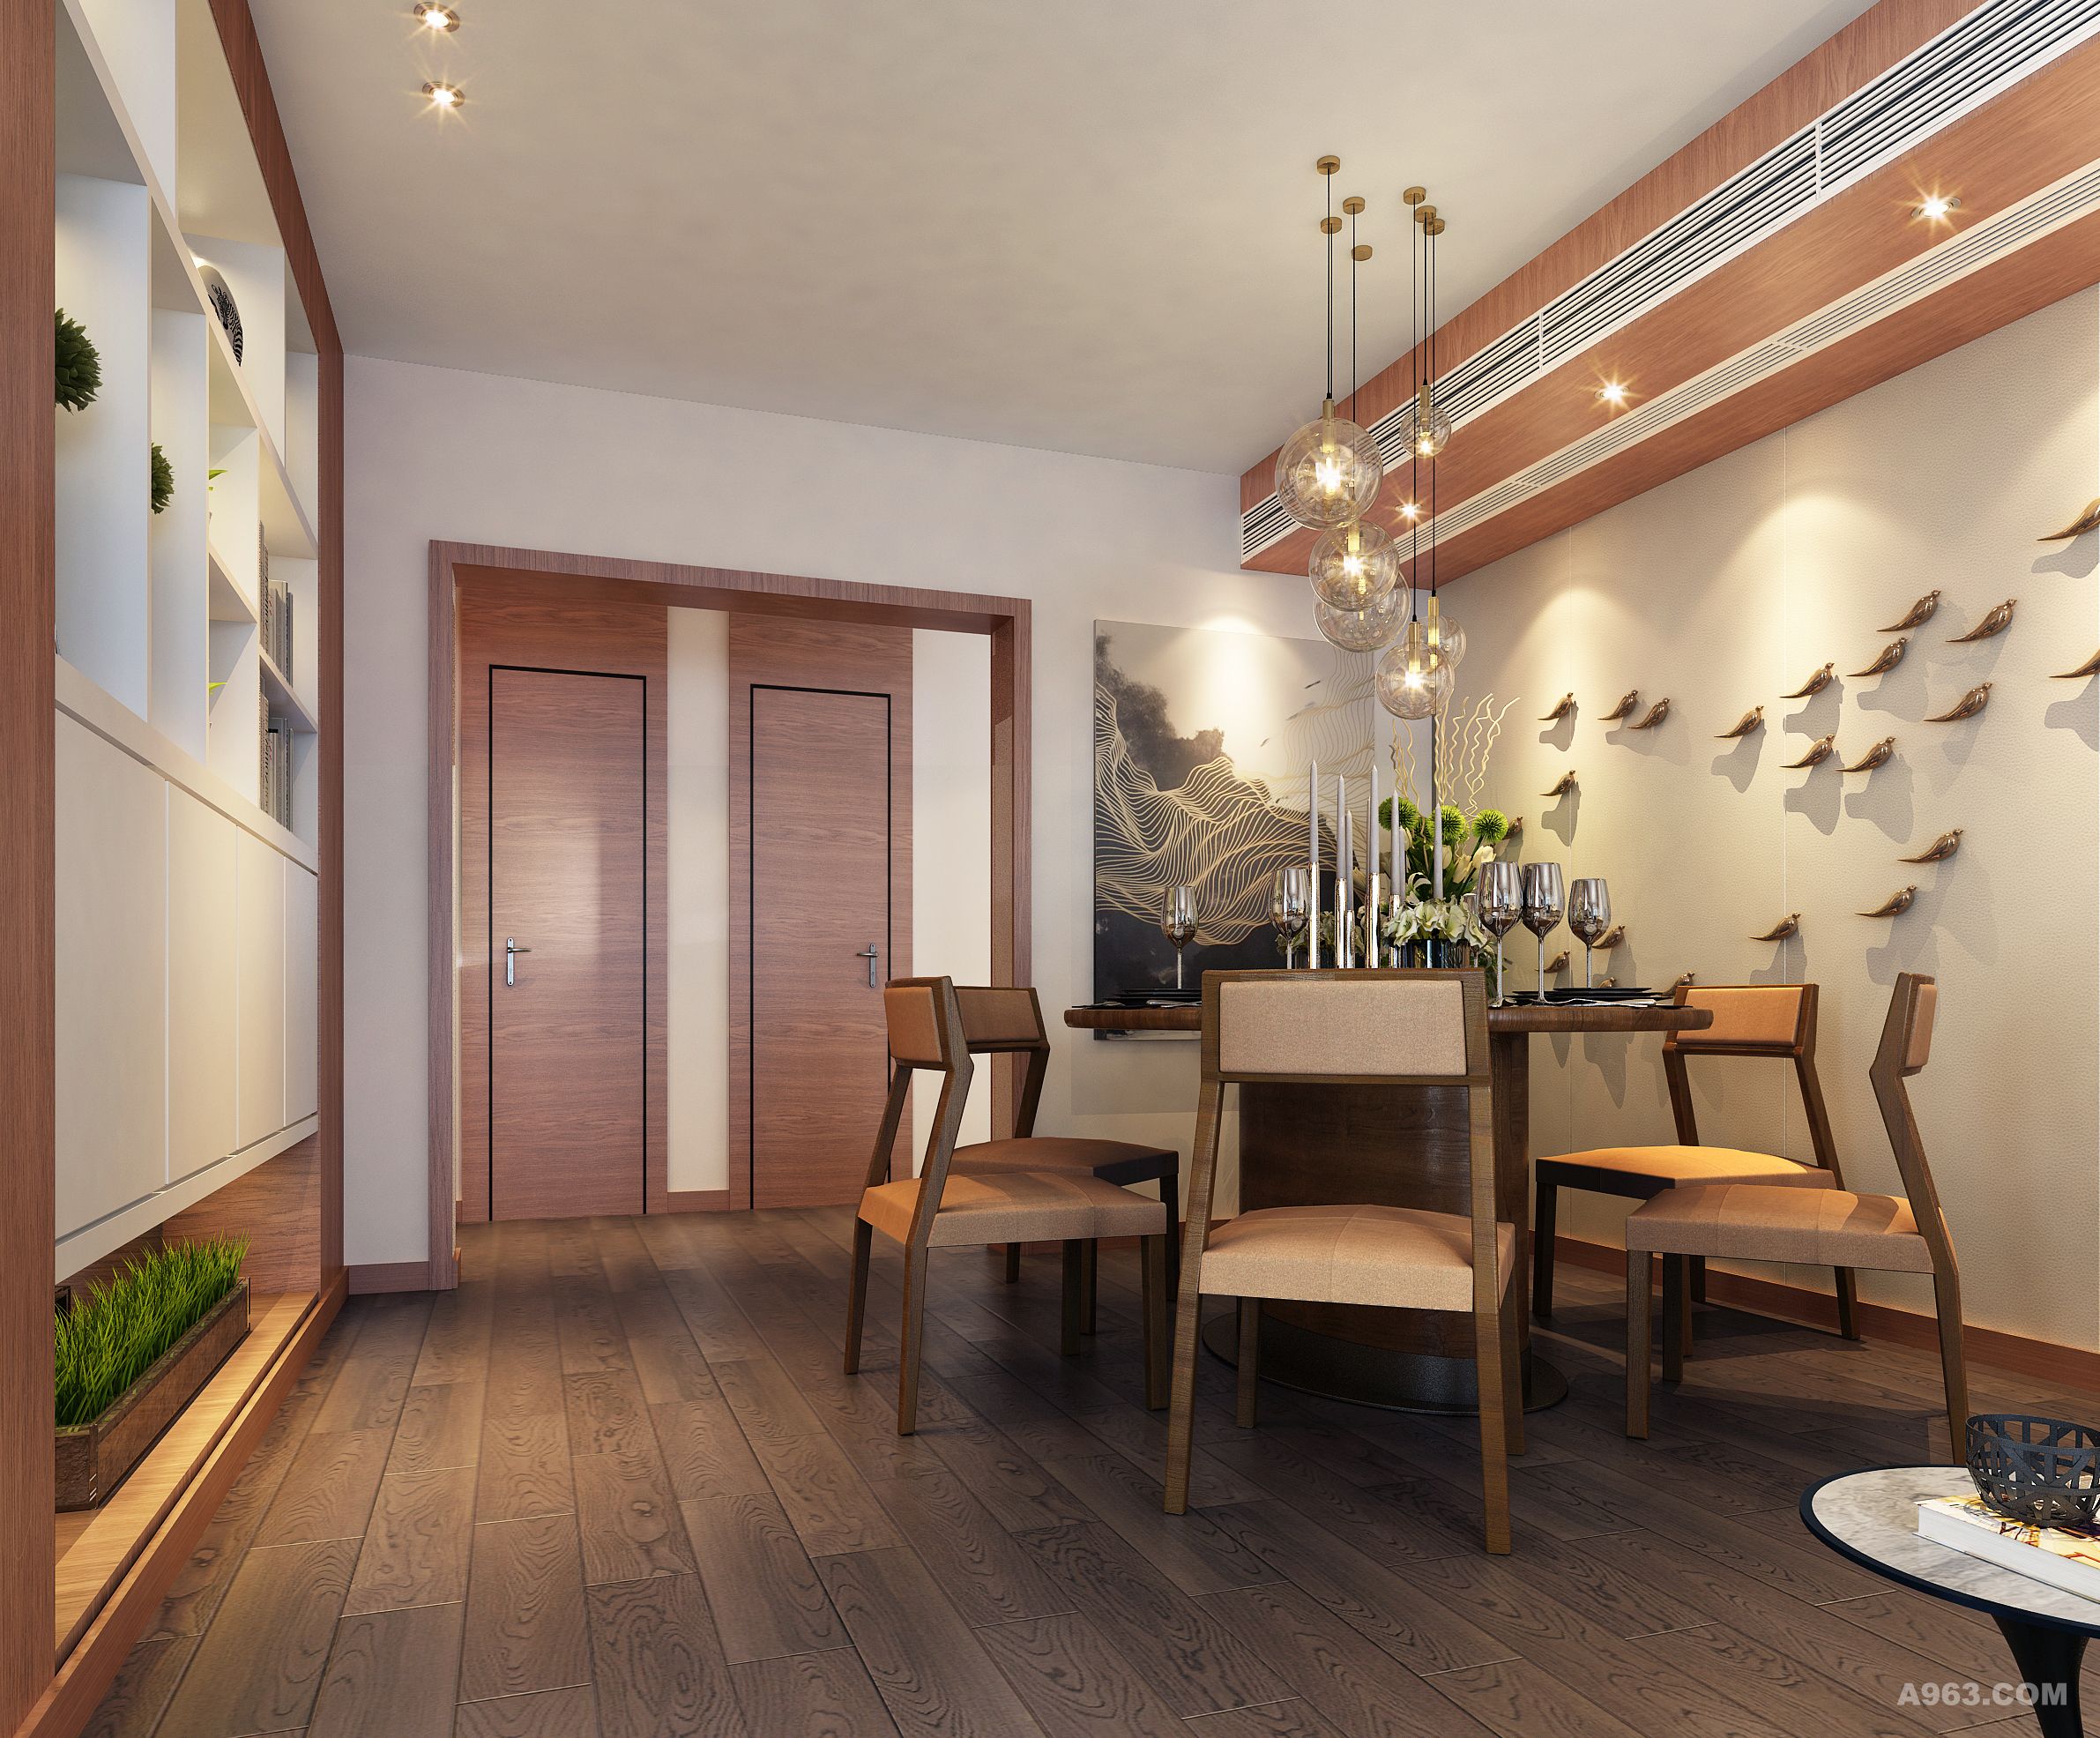 餐厅以简洁的白色为主要色调，客户喜欢暖色的空间，由于60后中年人的喜好，增加了木饰面的材质呼应整个空间。